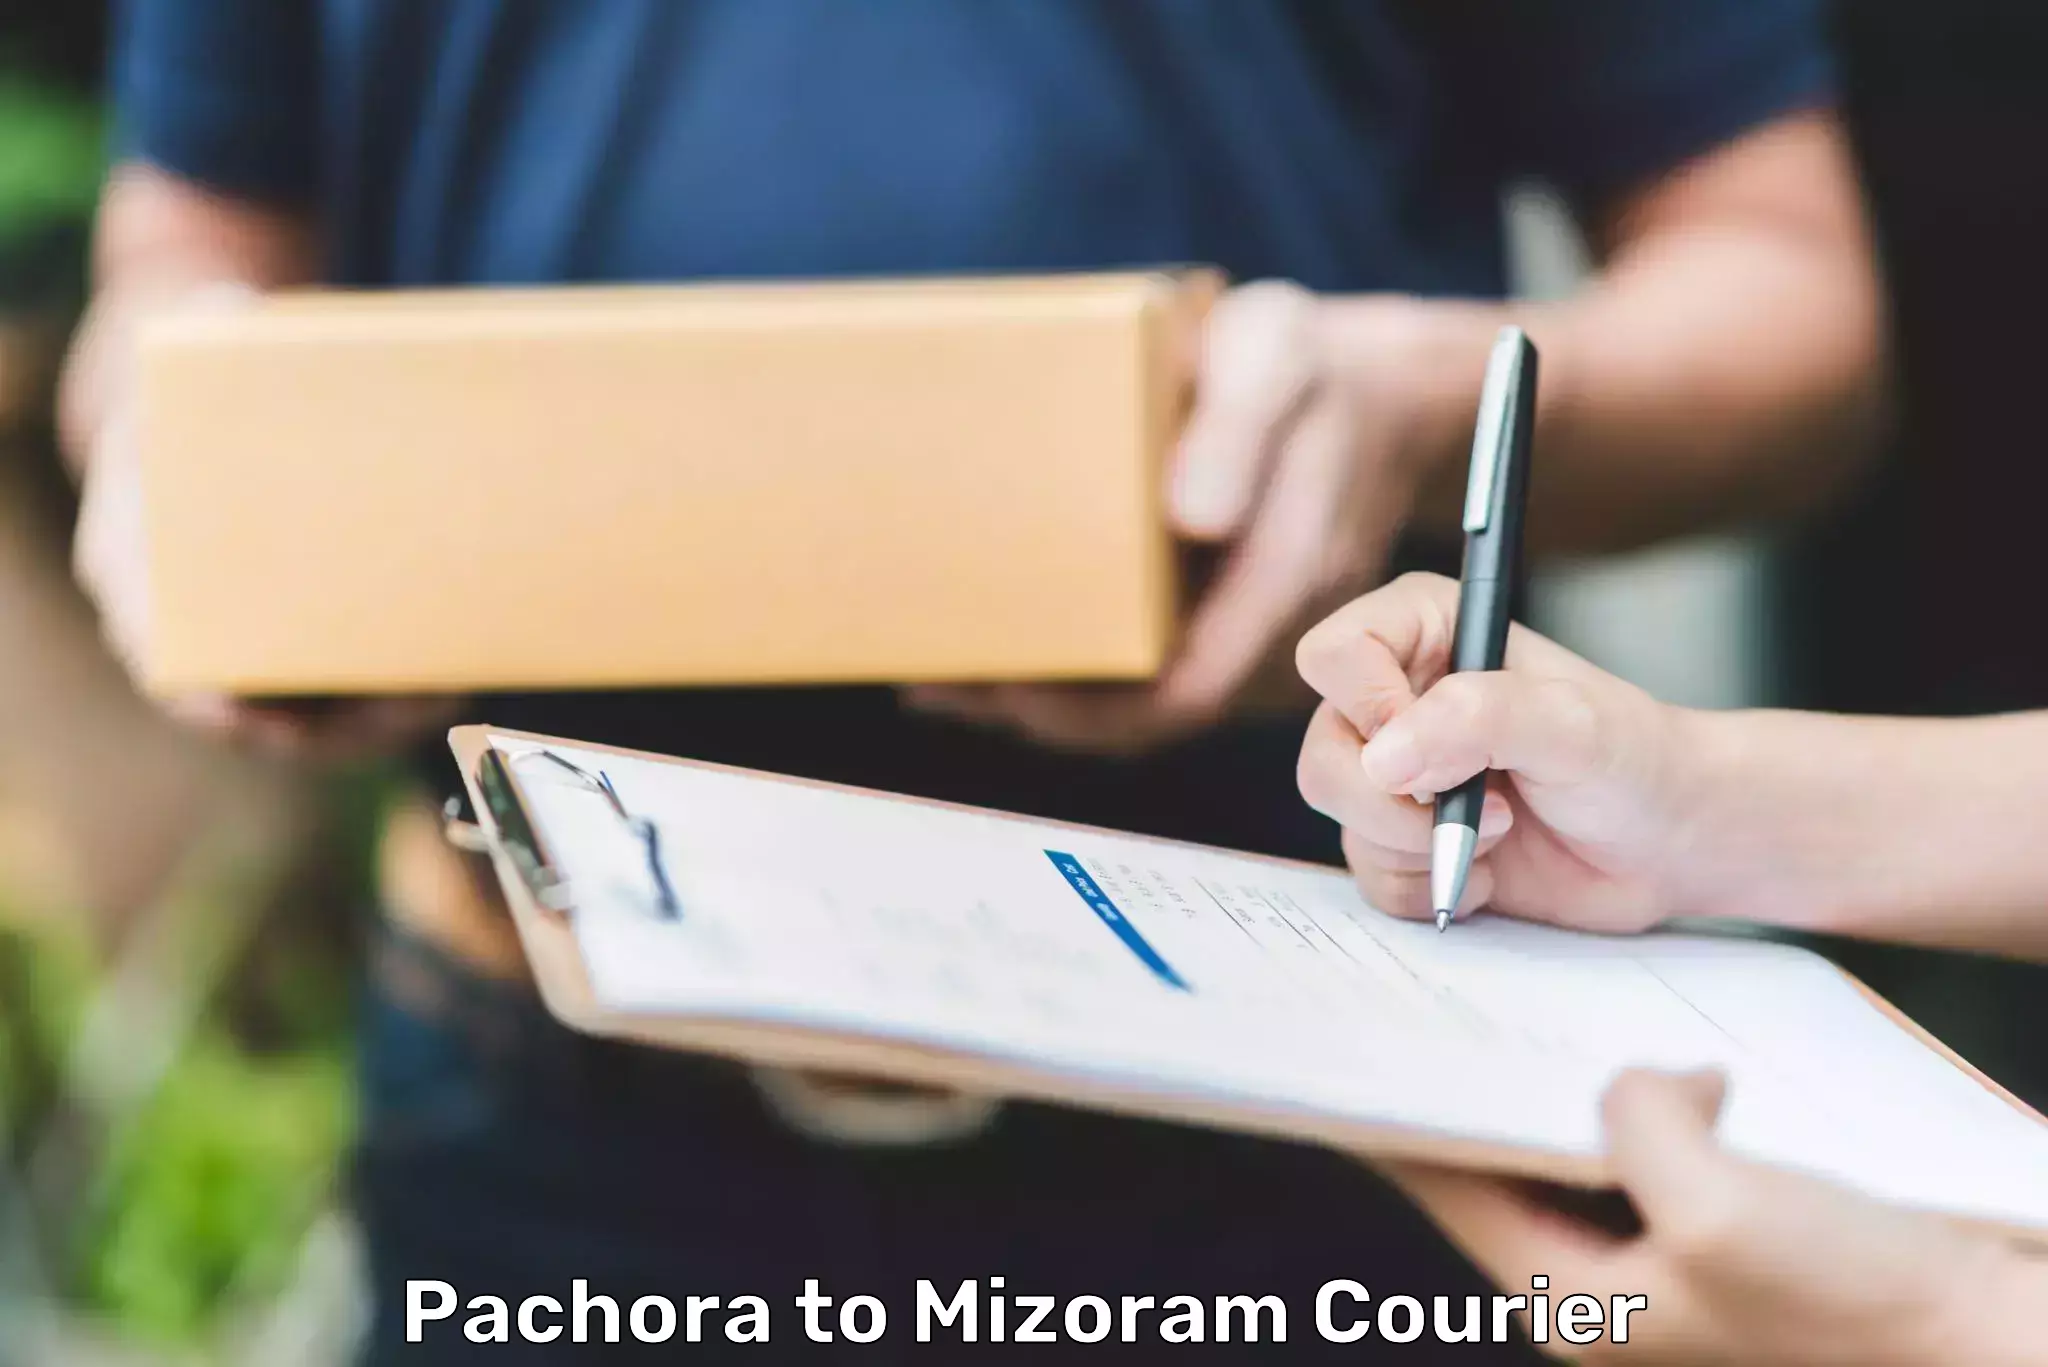 Express package handling Pachora to Mizoram